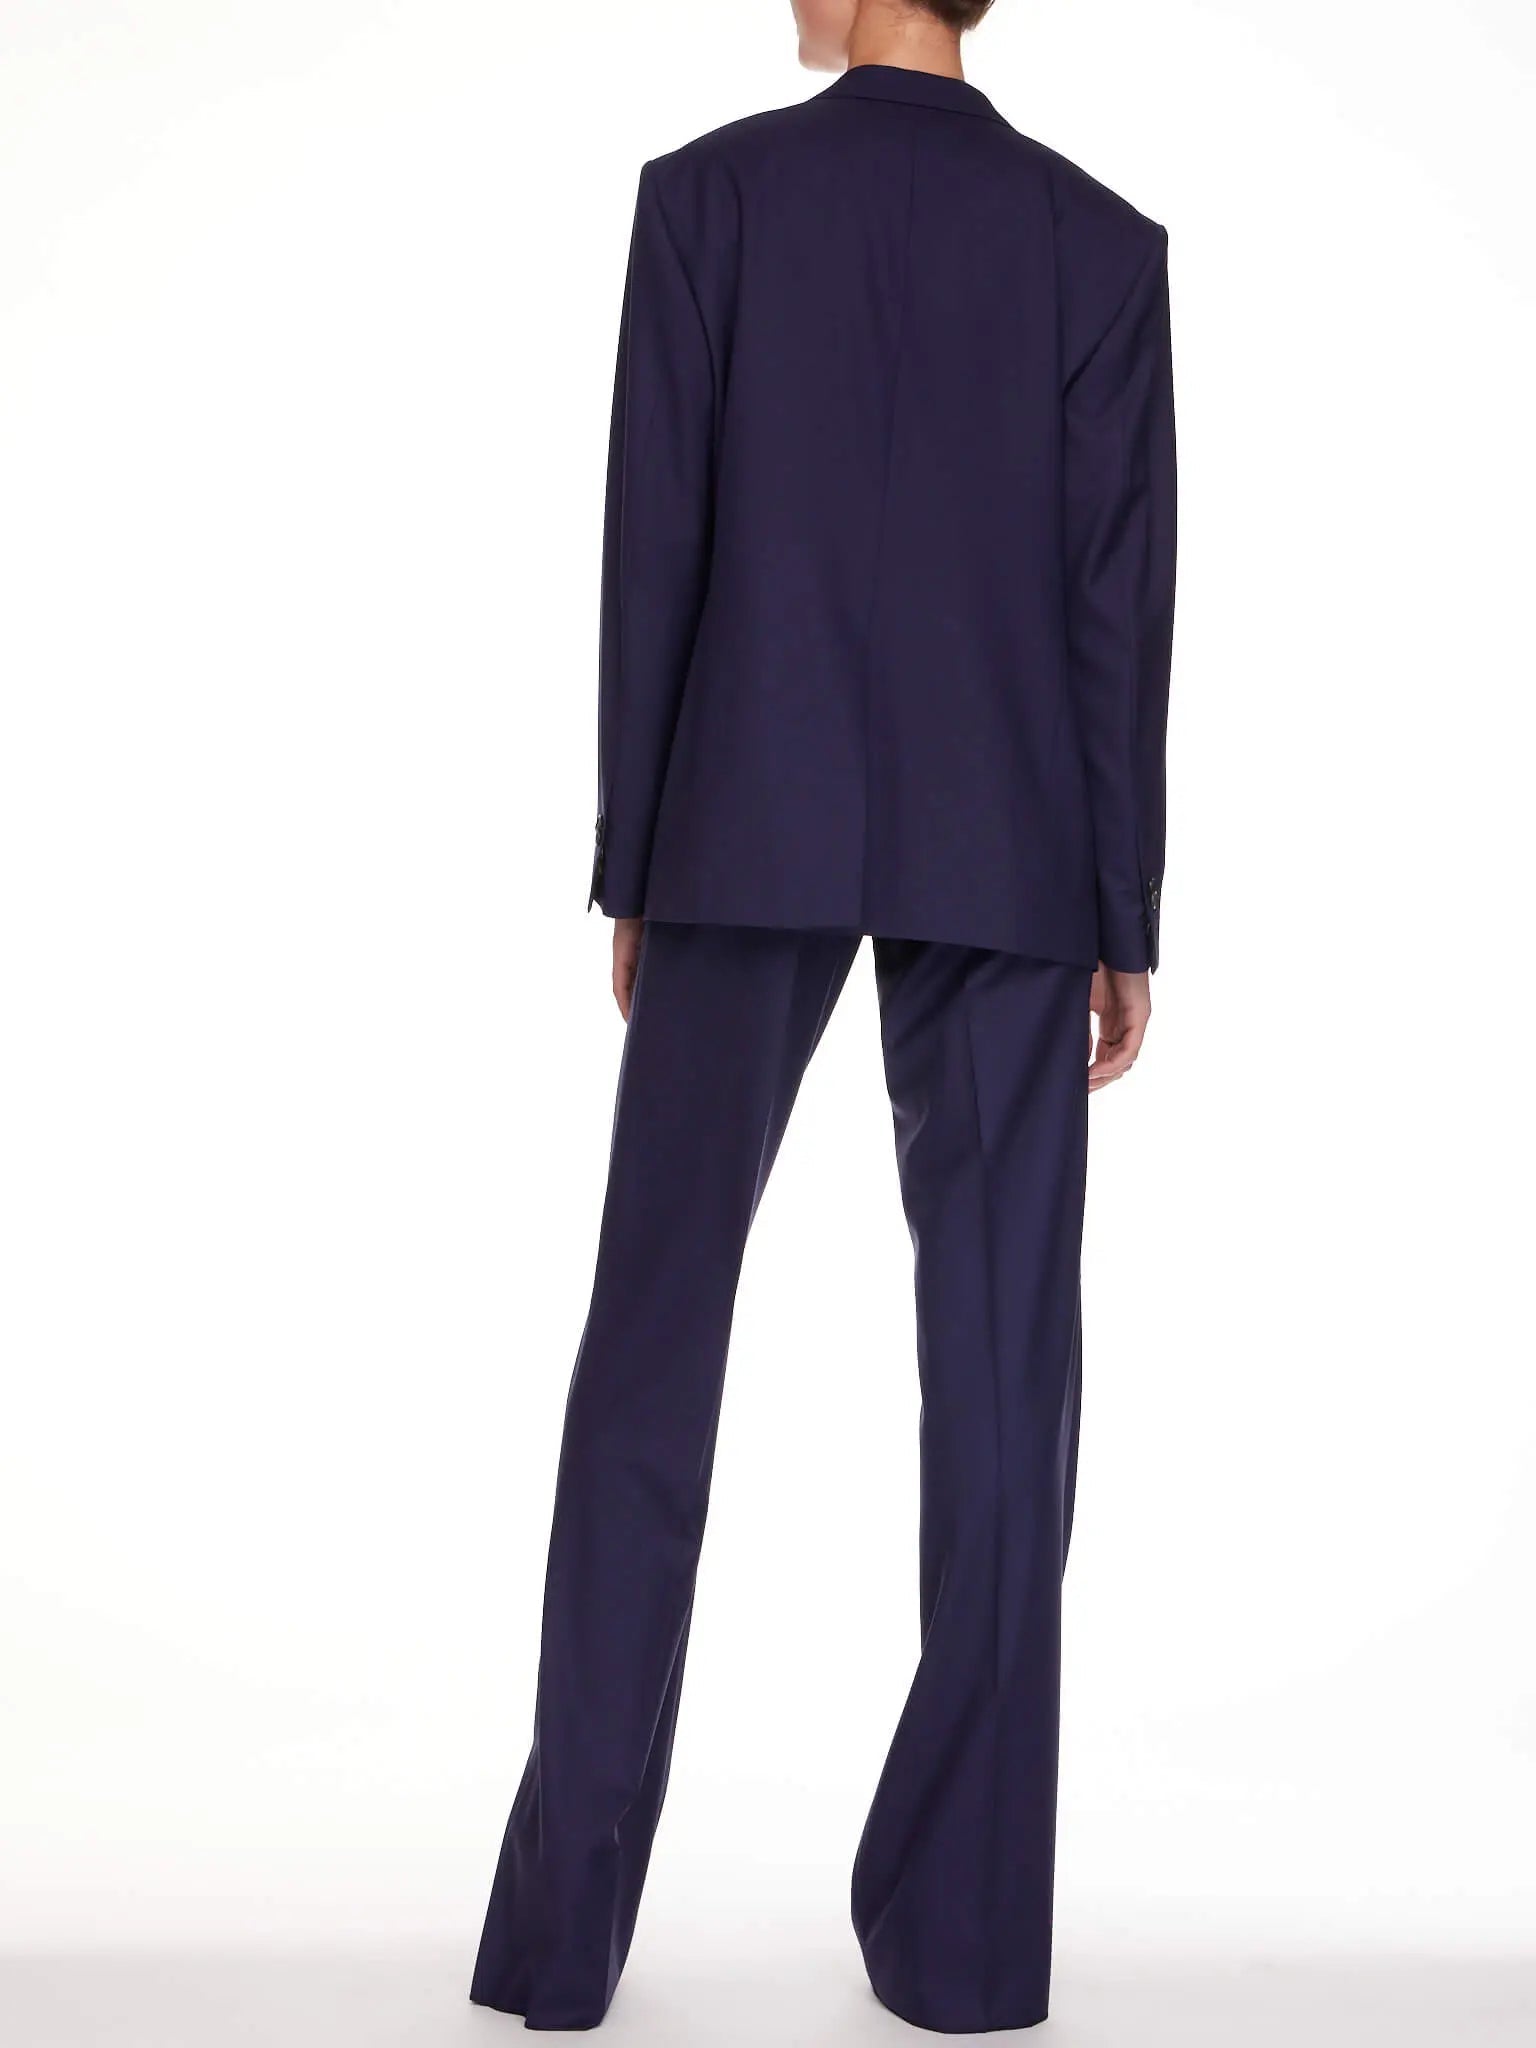 New Royal blue 2 piece set women business suits slim fit ladies office  uniform elegant pant suits fem… | Elegant pants suits, Suits for women, Womens  suits business